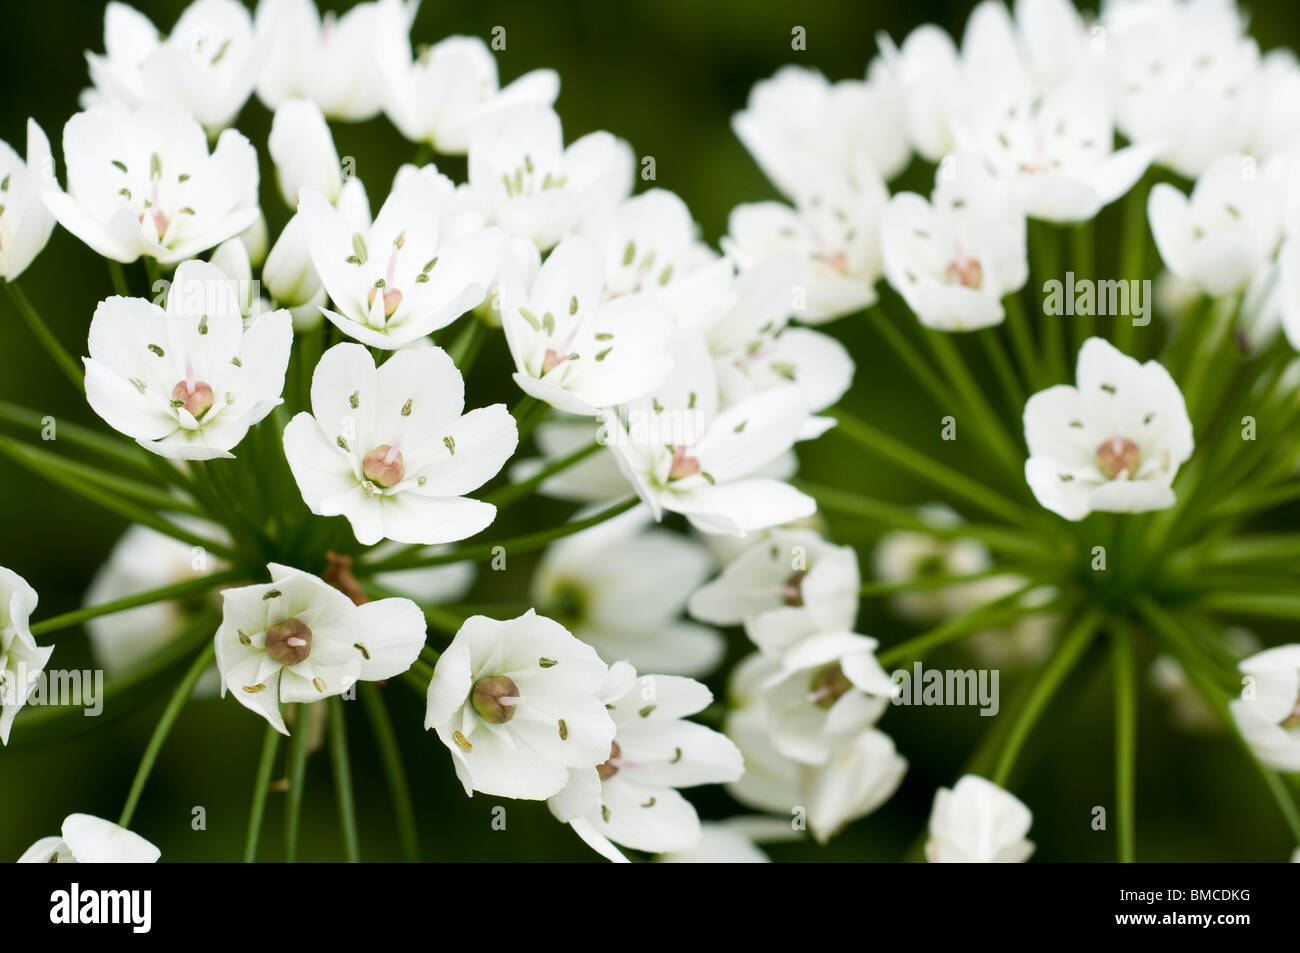 Allium cowanii, 'Allium neapolitanum', in flower Stock Photo